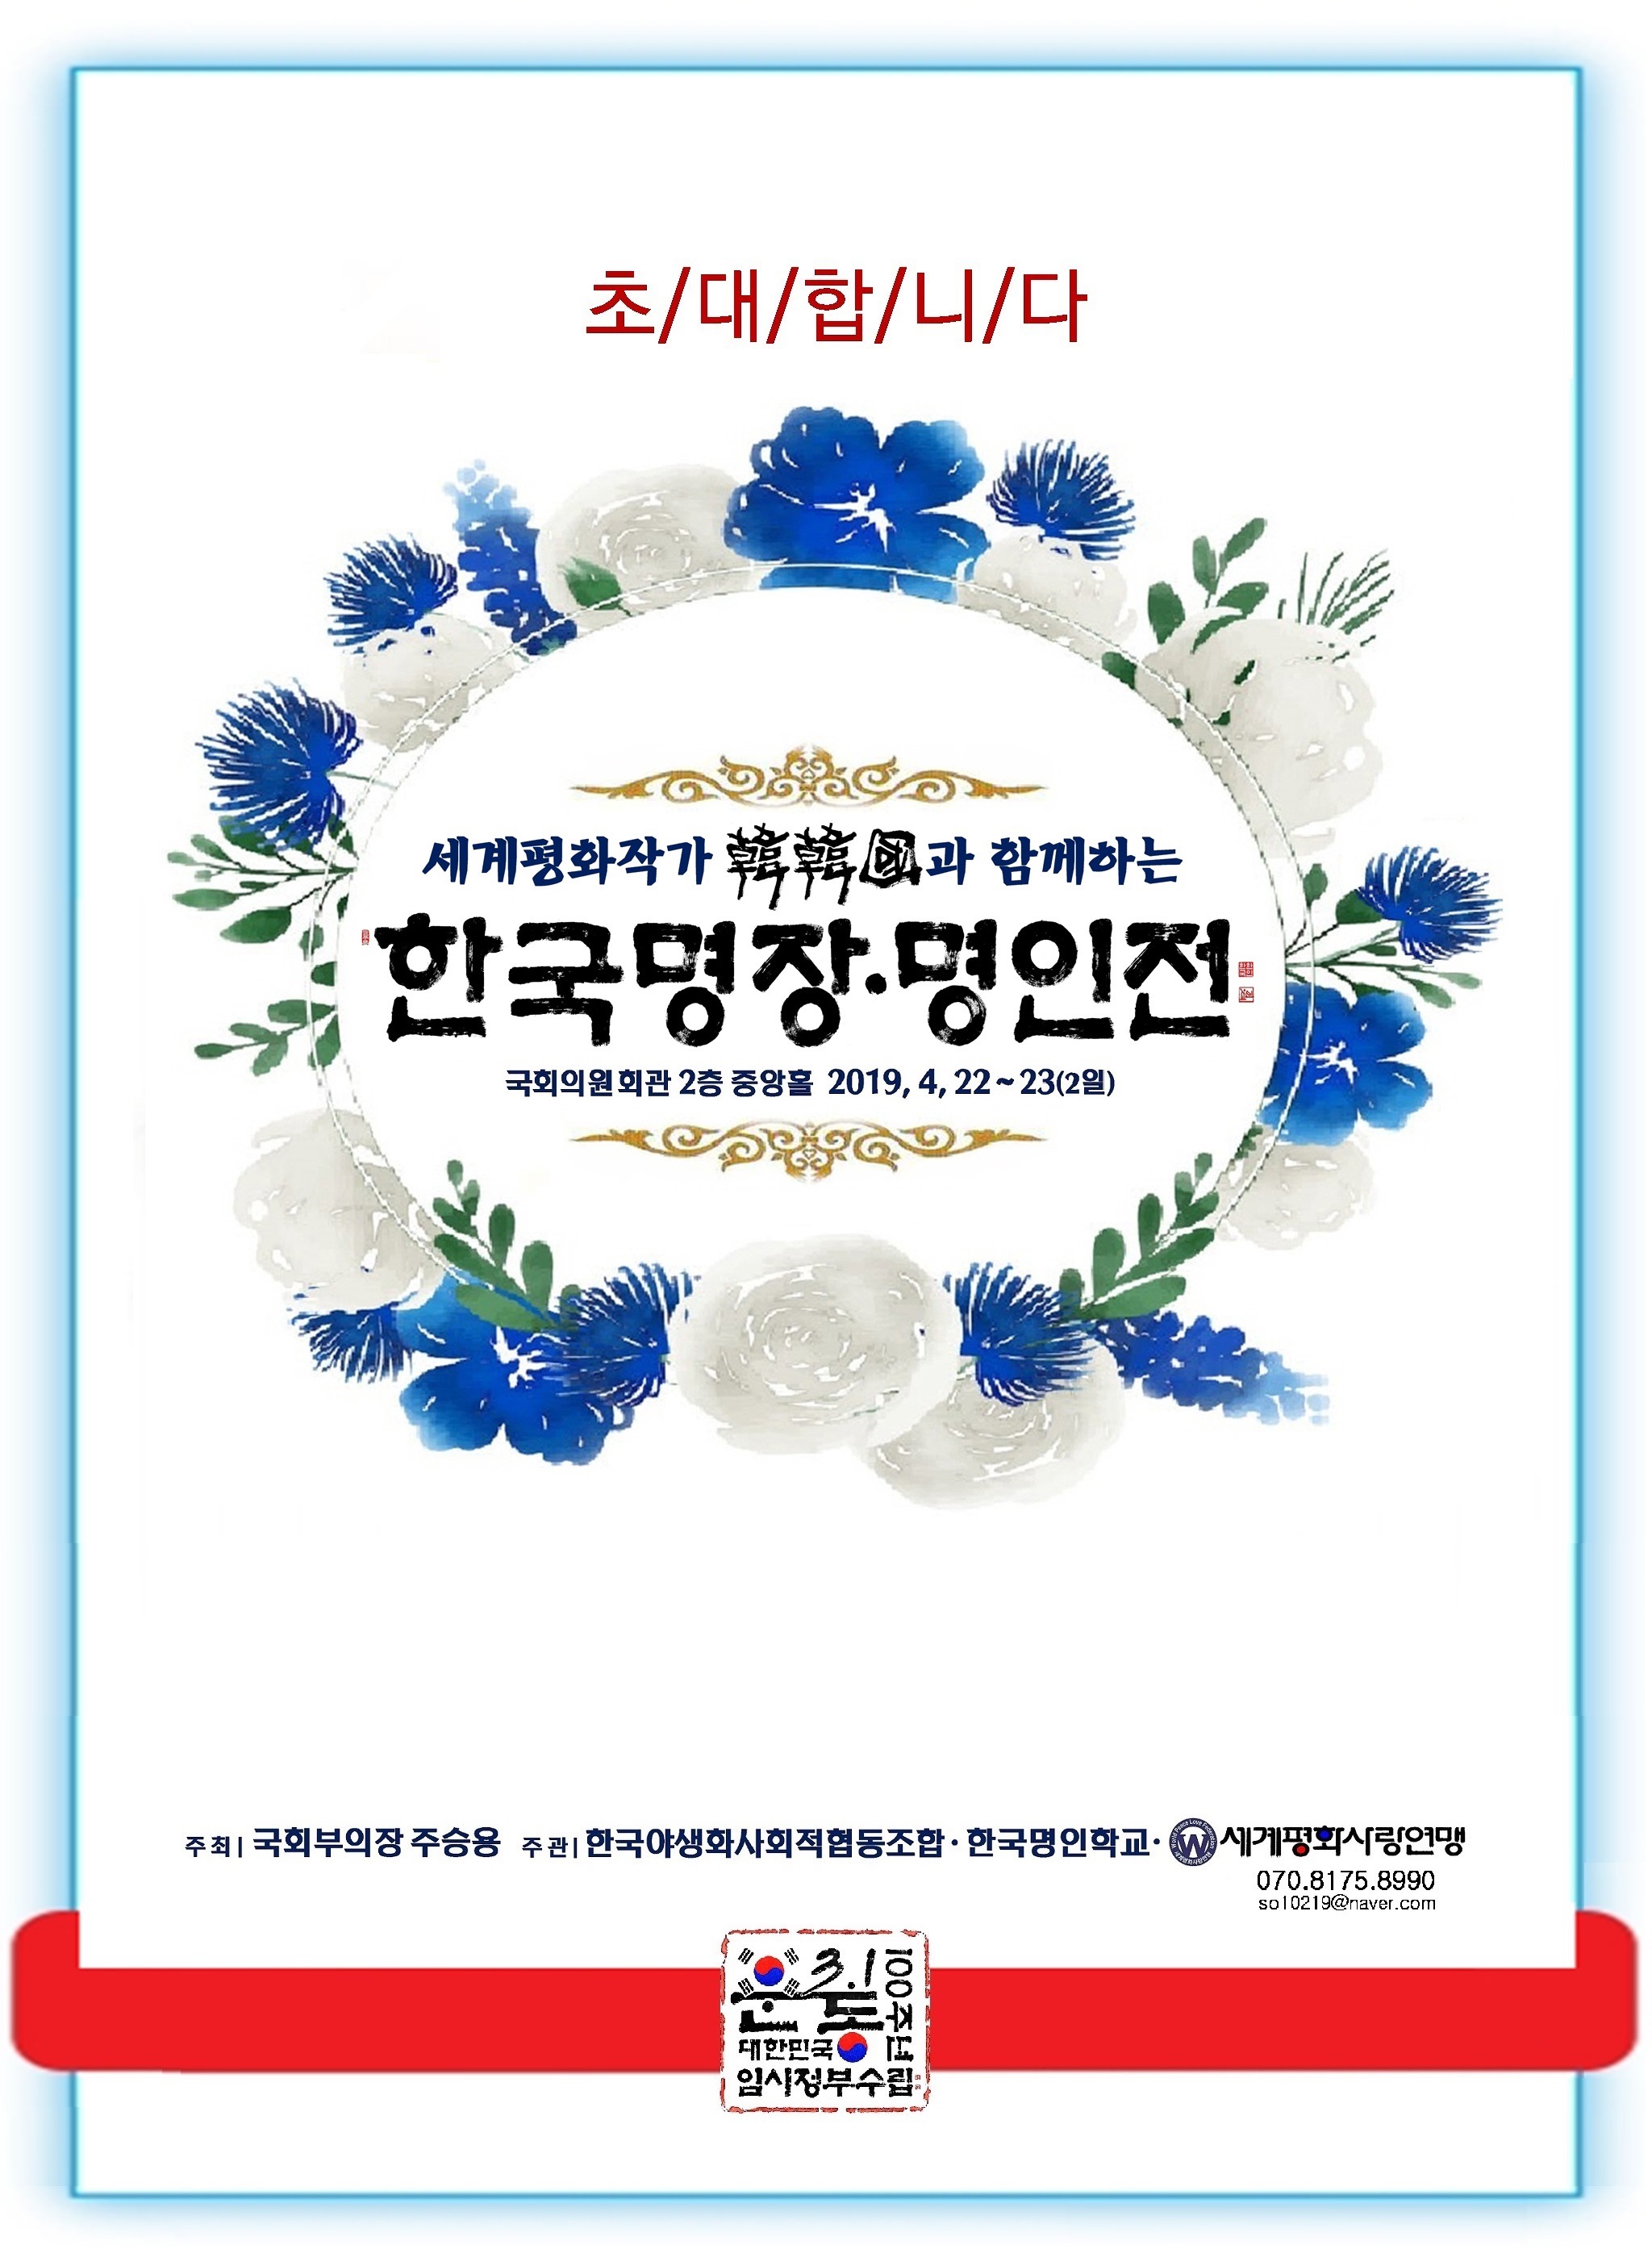 서울 국회의원회관에서 열리는 한국명장·명인전 초대장 포스터.